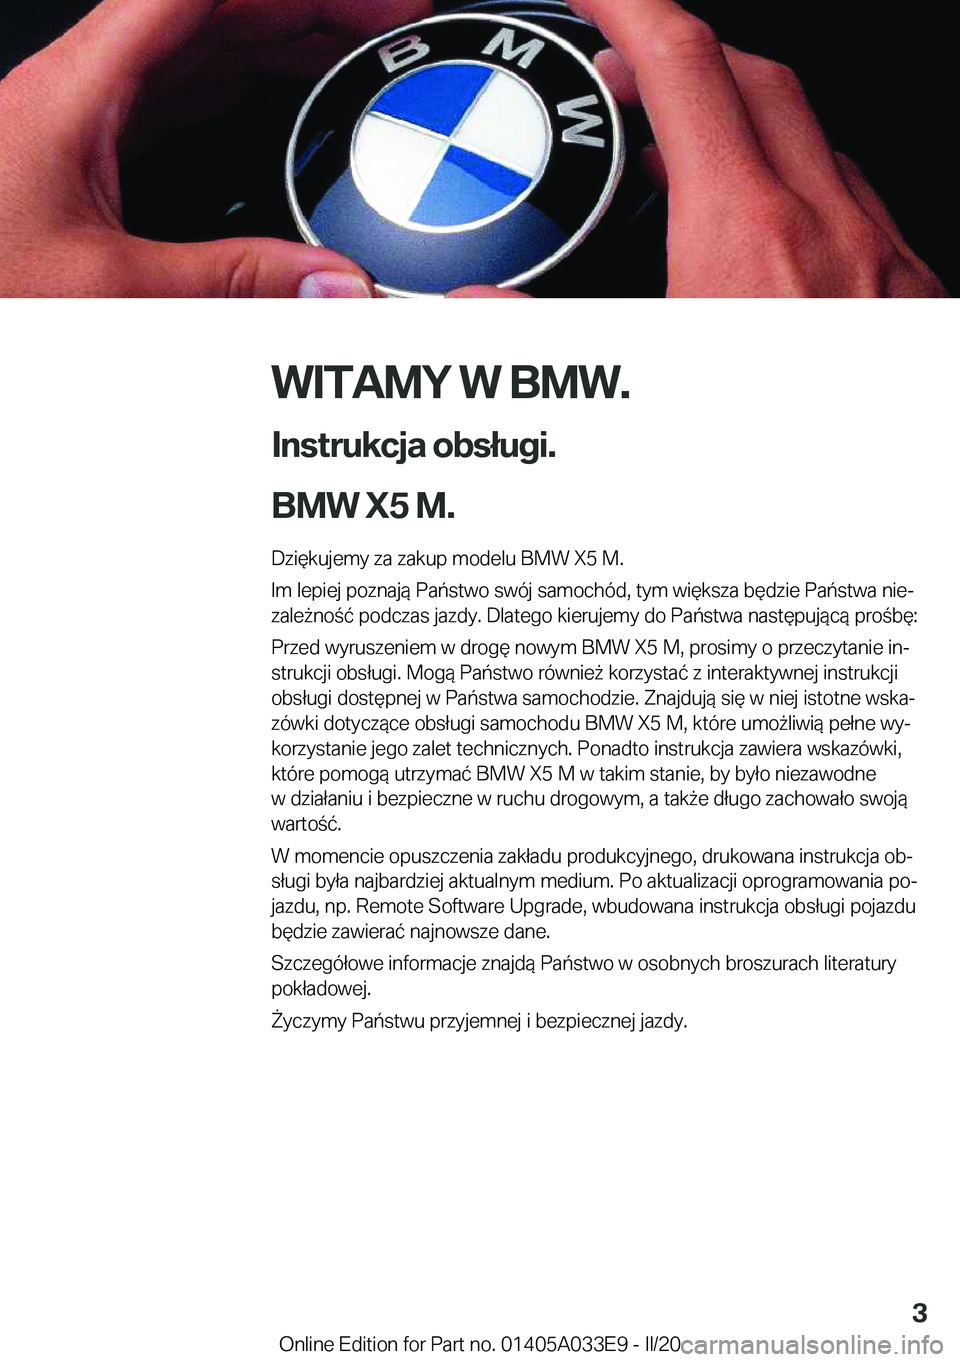 BMW X5 M 2020  Instrukcja obsługi (in Polish) �W�I�T�A�M�Y��W��B�M�W�.
�I�n�s�t�r�u�k�c�j�a��o�b�s�ł�u�g�i�.
�B�M�W��X�5��M�. �D�z�i�